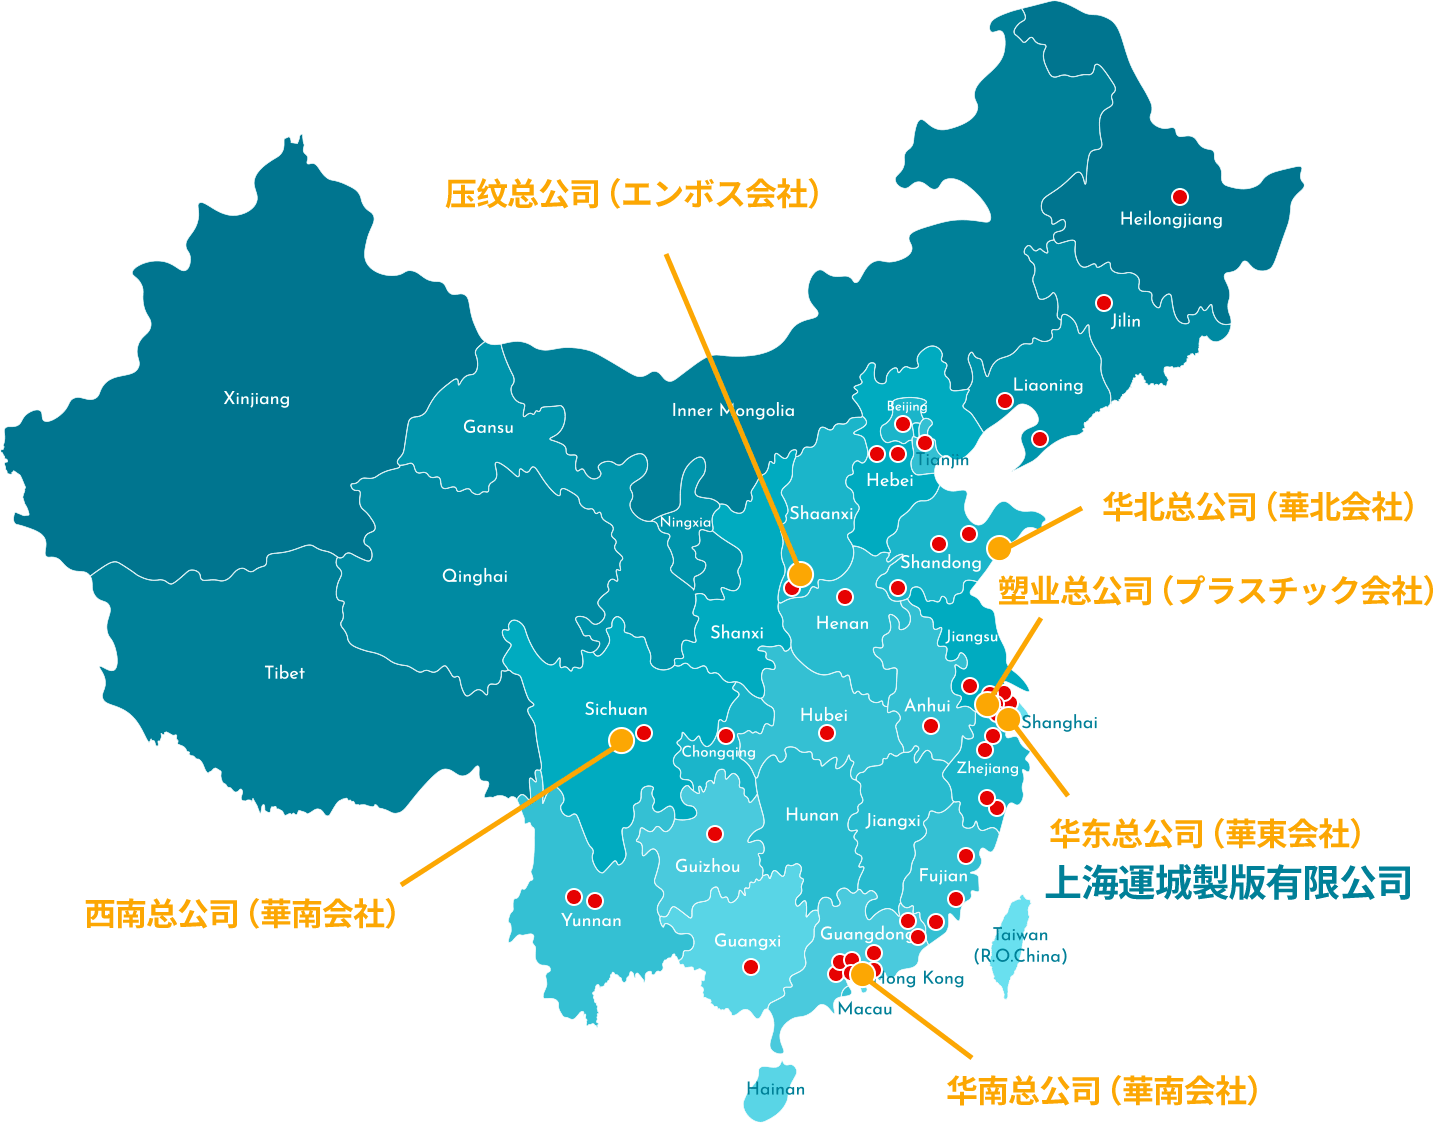 東京運城製版 中国国内の関連会社分布図